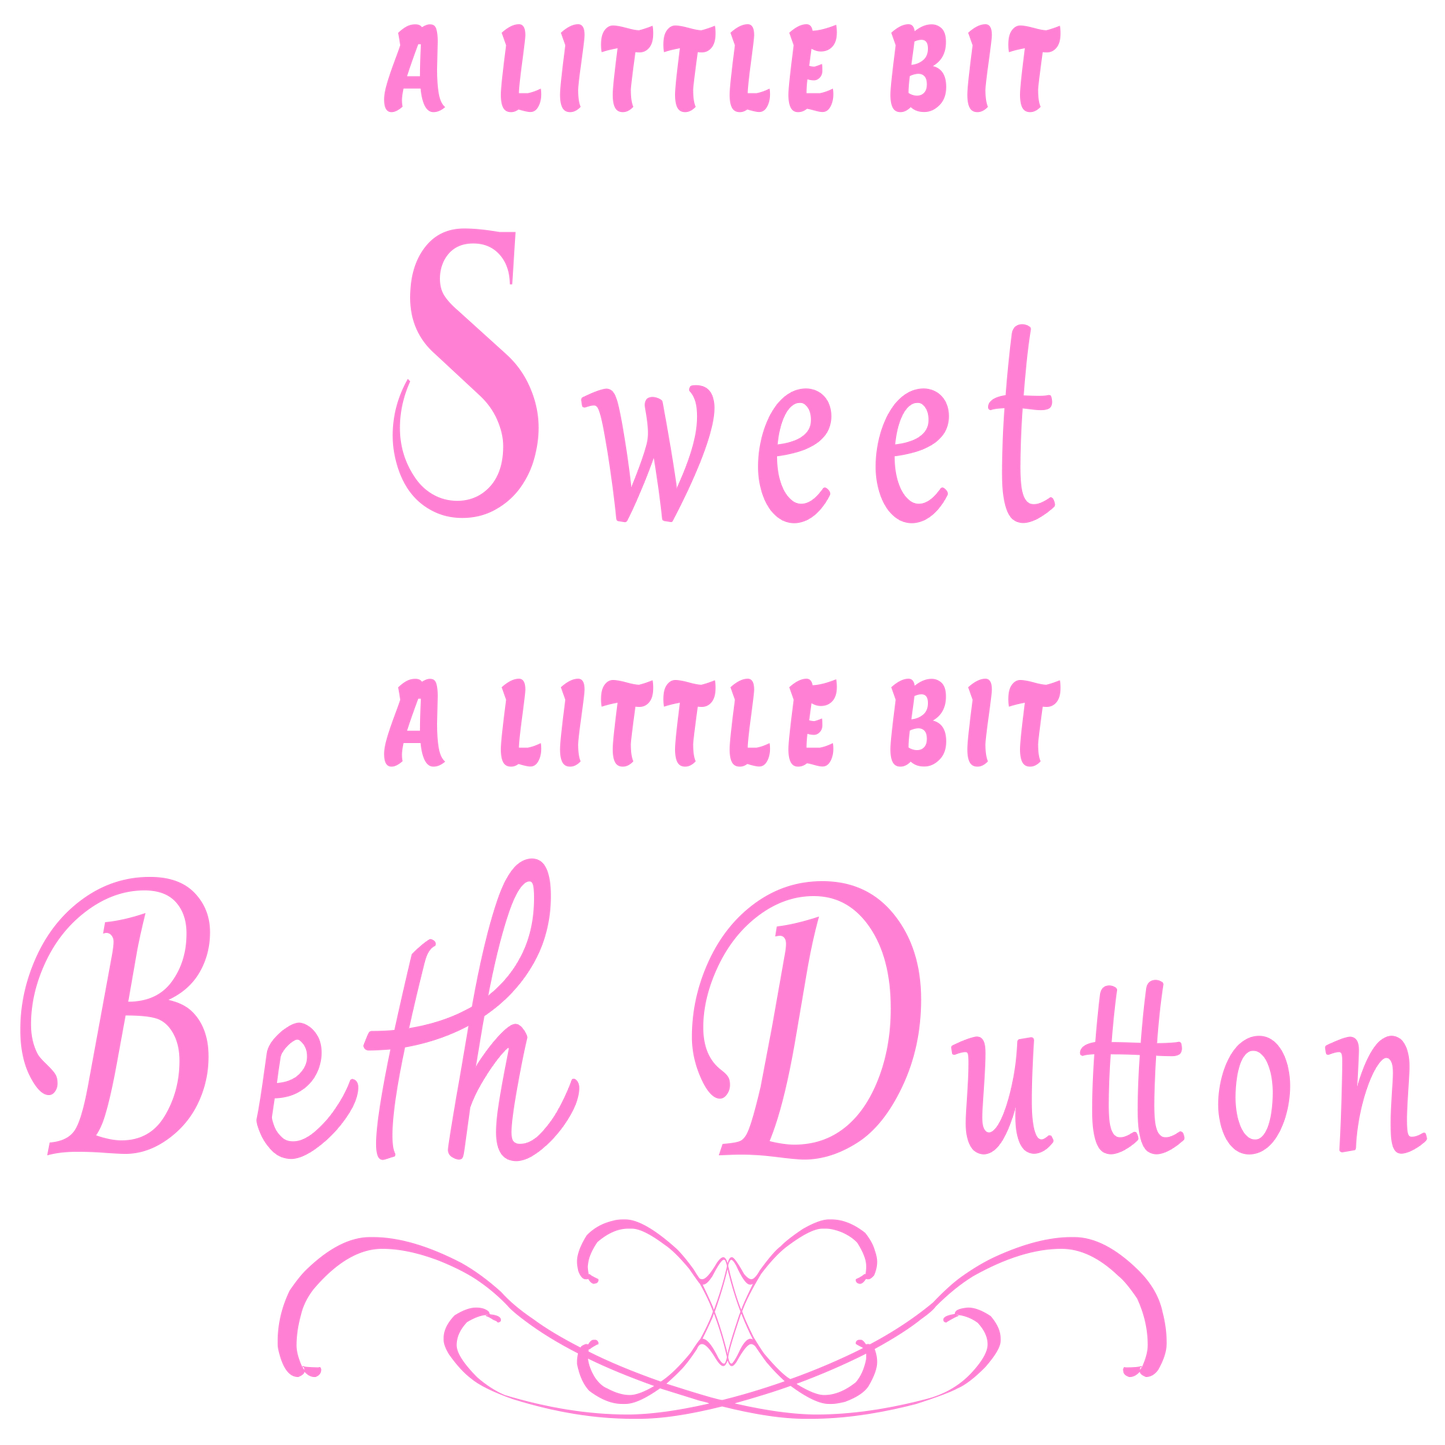 A little bit sweet. A little bit Beth Dutton.